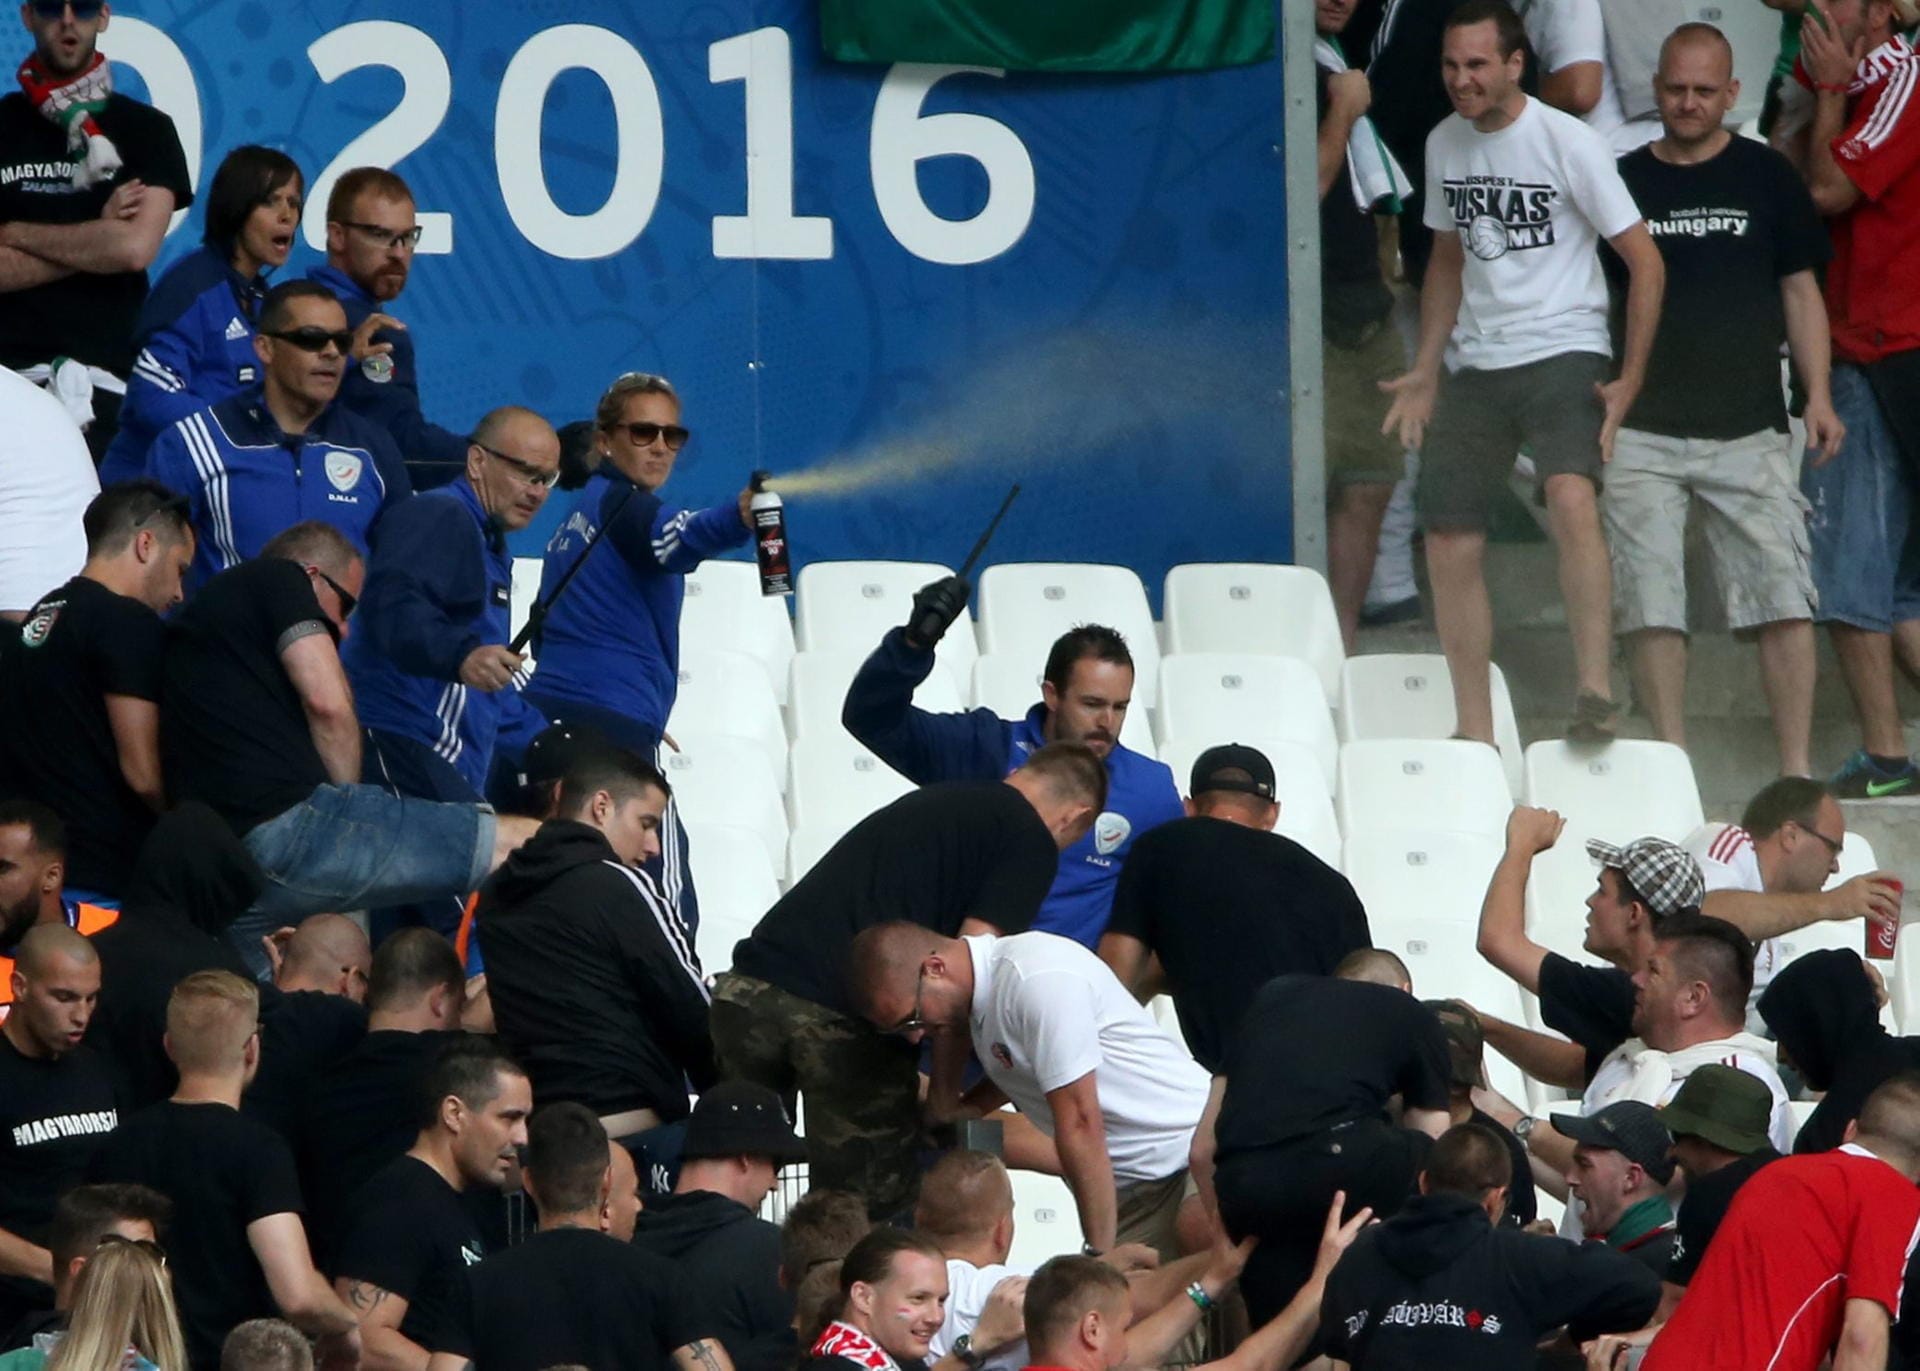 Leider kommt es bereits vor dem Anstoss im Stade Velodrome von Marseille zu Ausschreitungen unter ungarischen Anhängern. Die Ordner gehen mit Pfefferspray gegen die Randalierer vor.